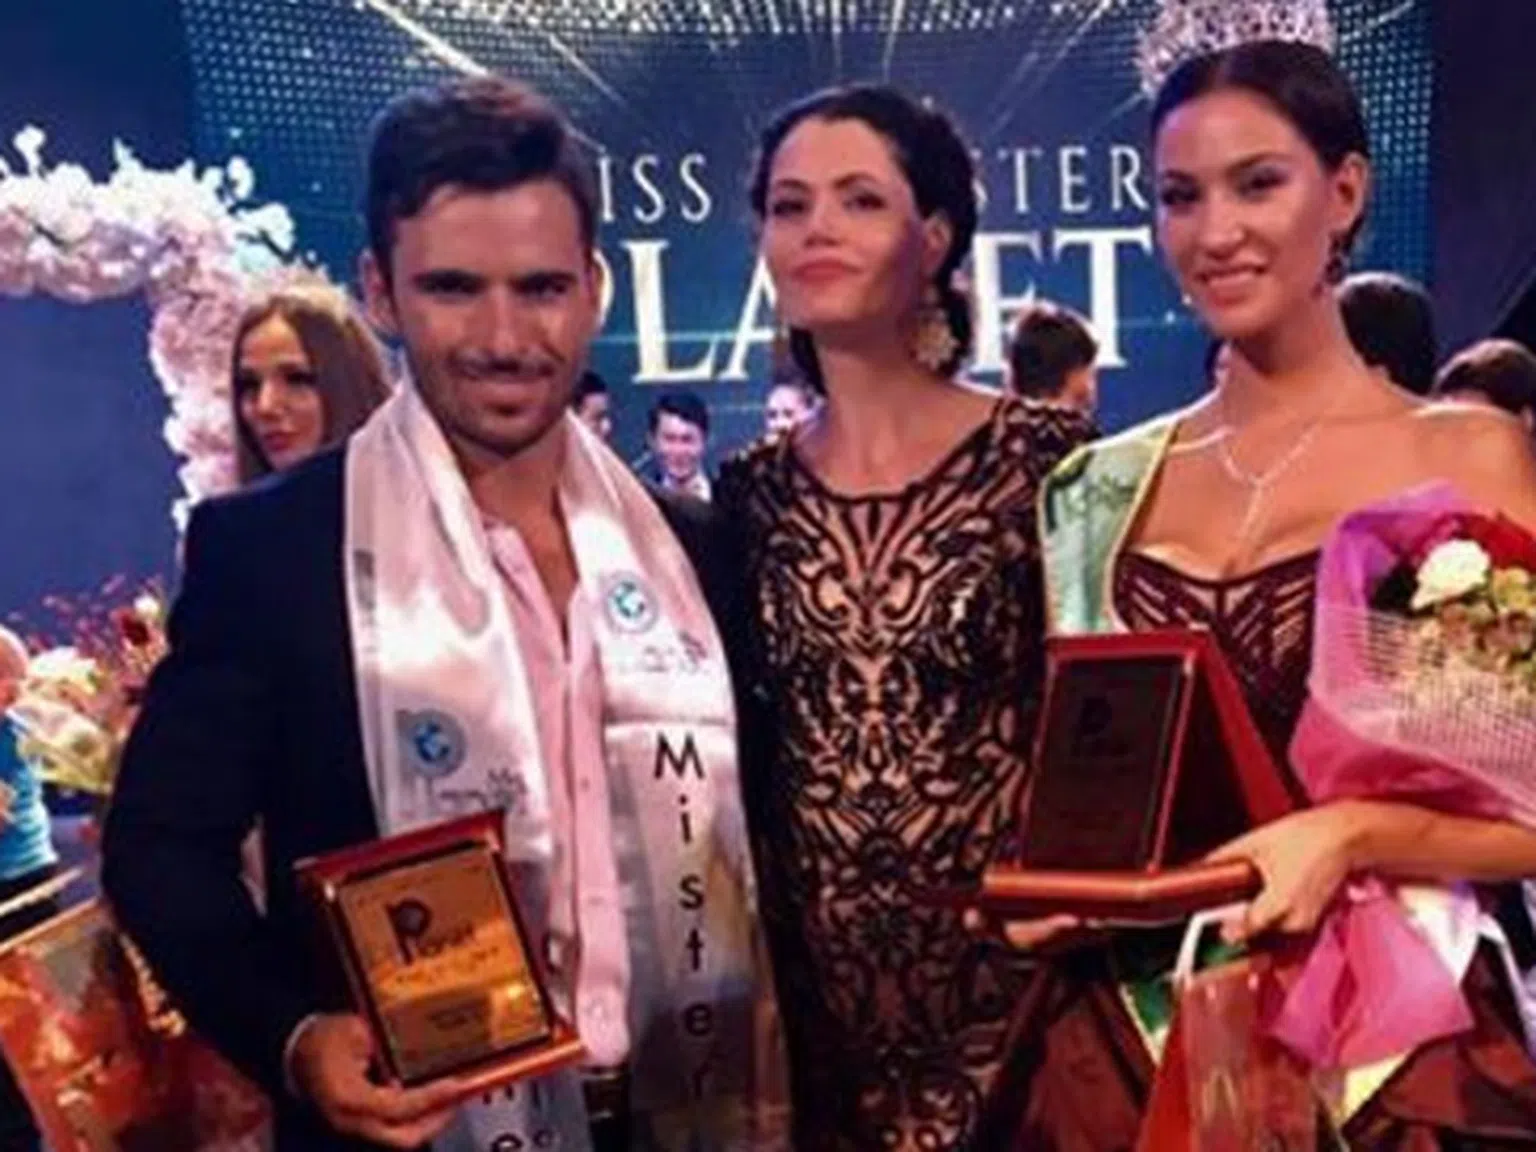 Българи жънат успехи на престижен конкурс за красота